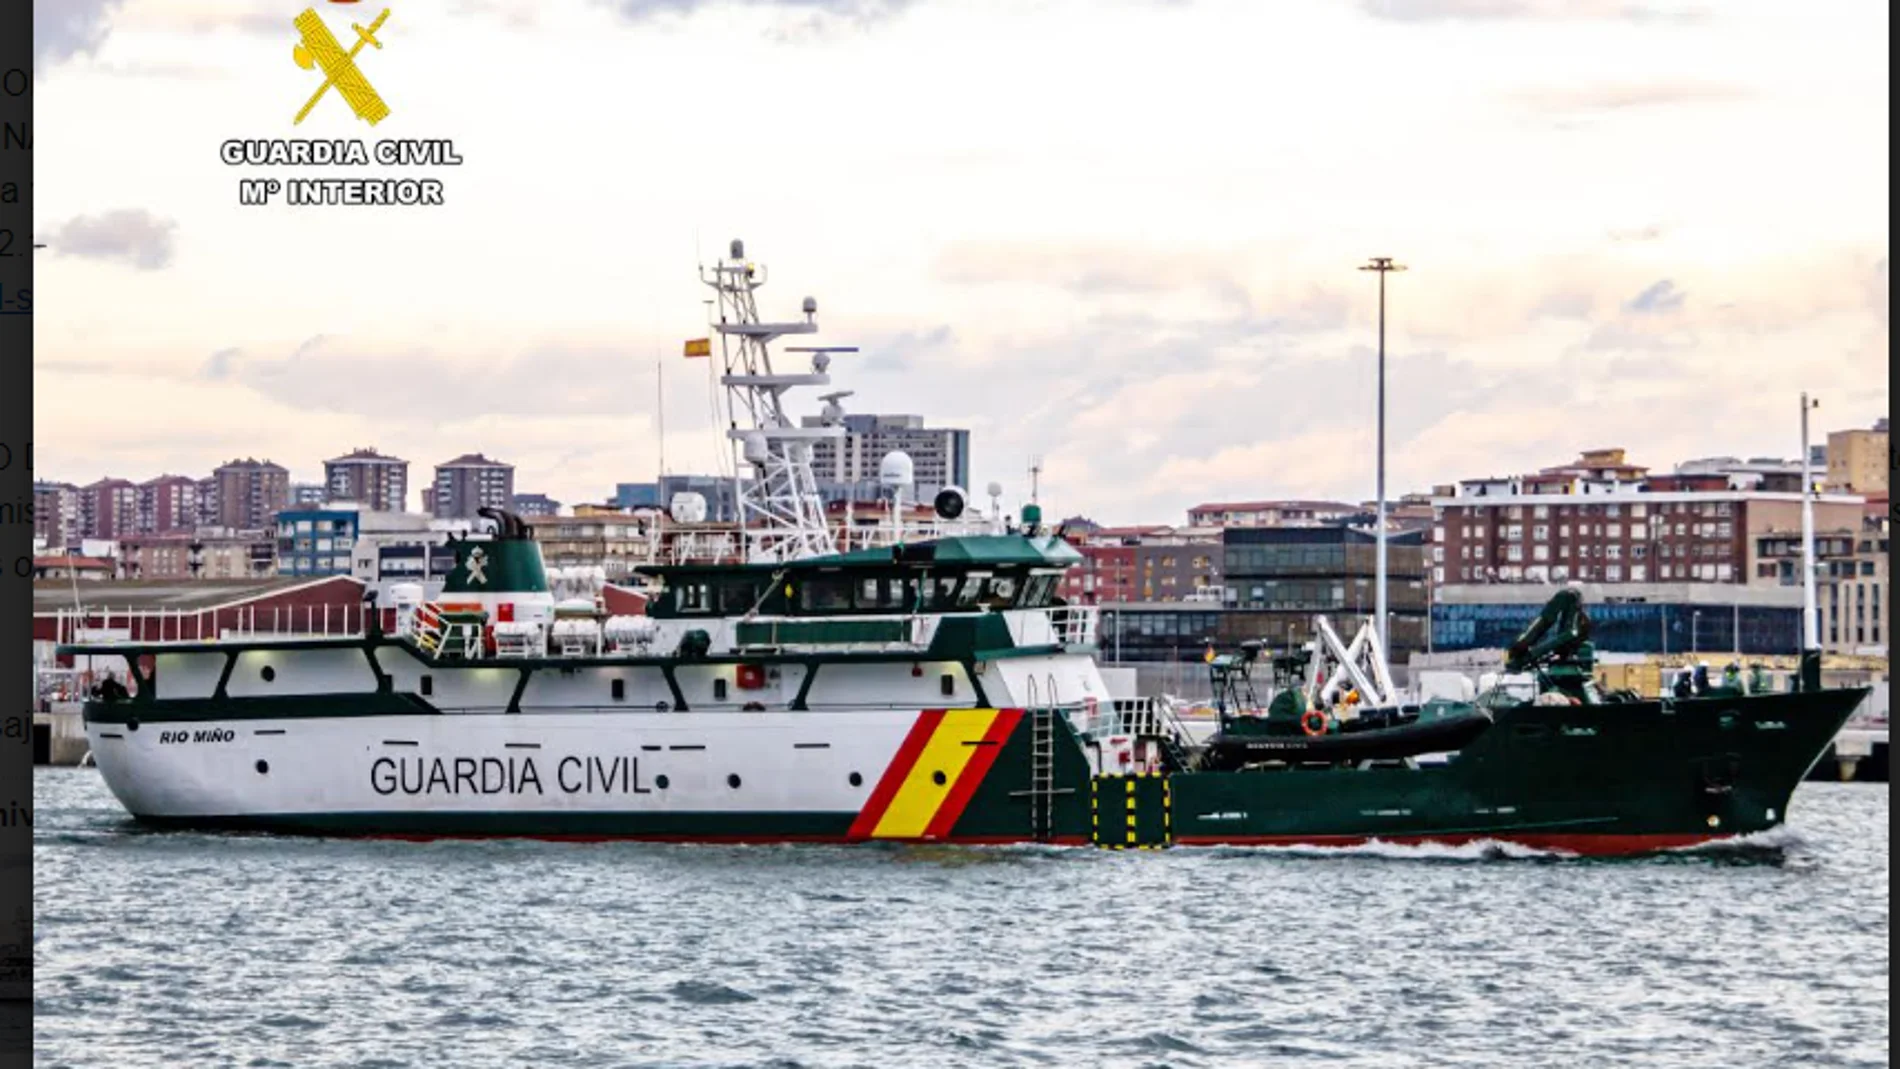 El "Rio Miño", del Servicio Marítimo de la Guardia Civil 